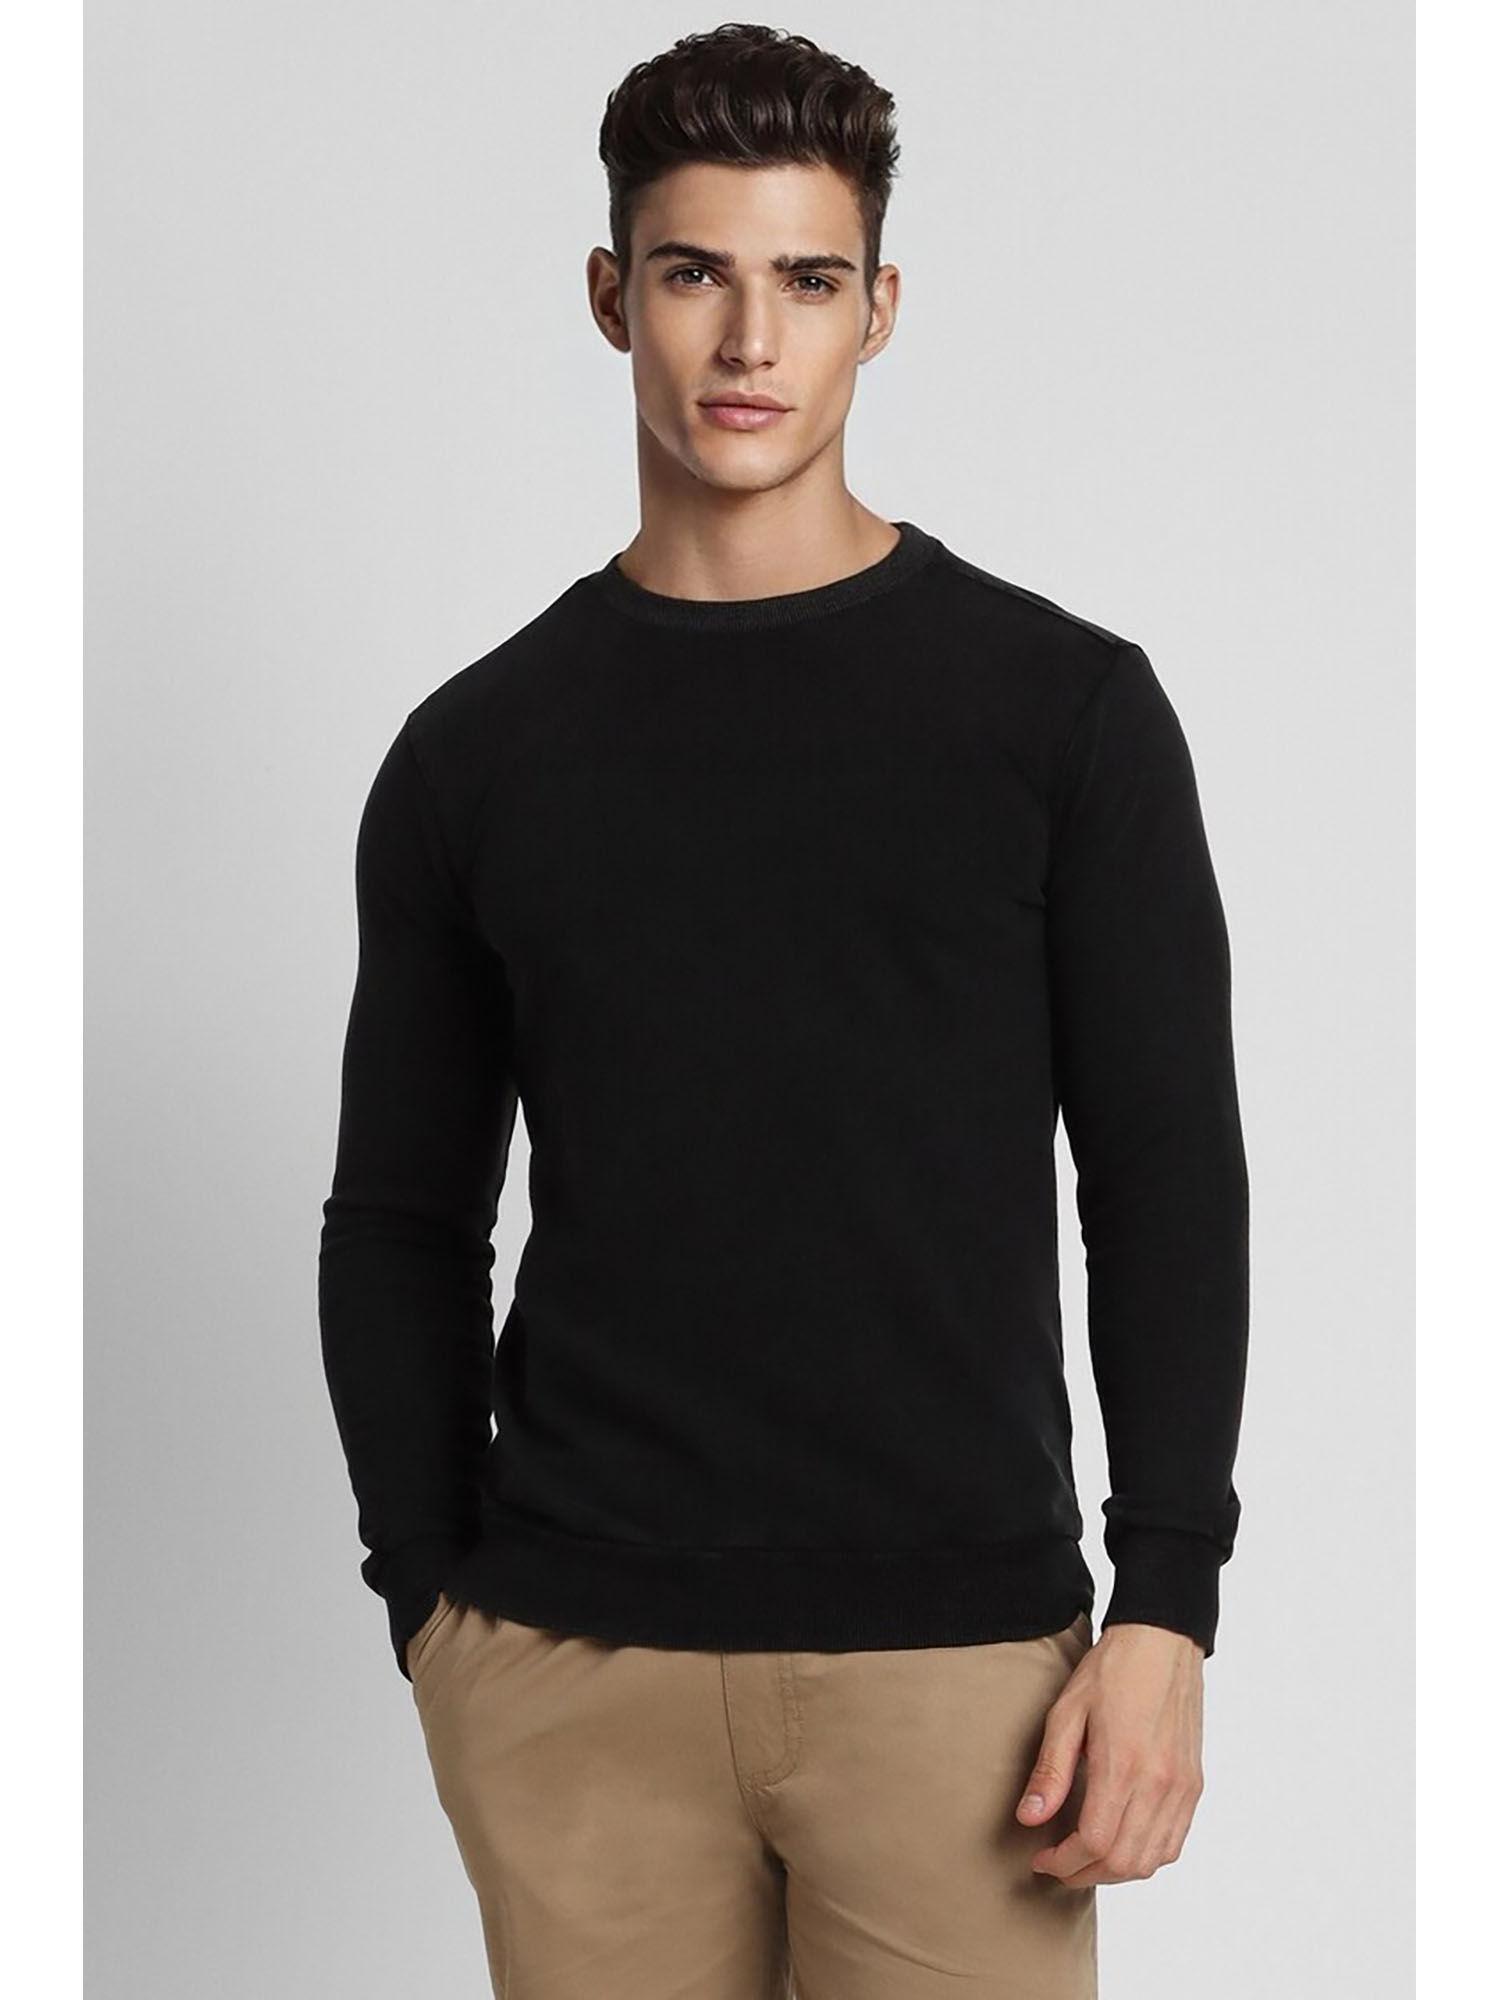 men's-solid-black-sweatshirt